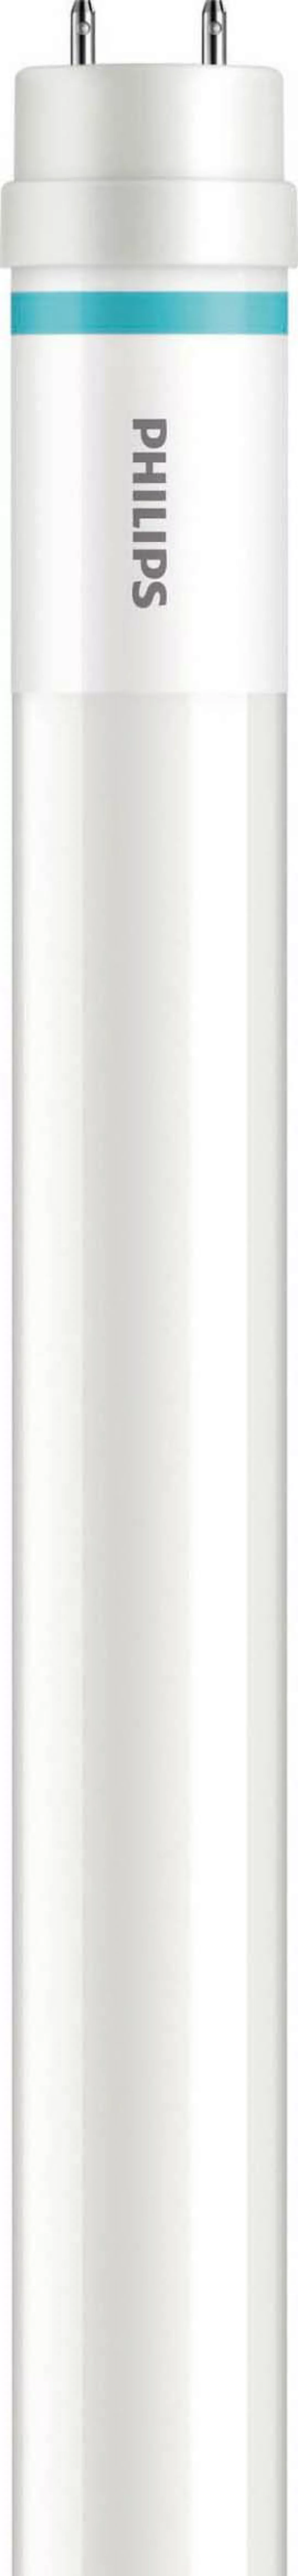 Philips Lighting LED-Tube 1500mm HO20.5W 840T8 MLEDtubeVLE#64693600 günstig online kaufen